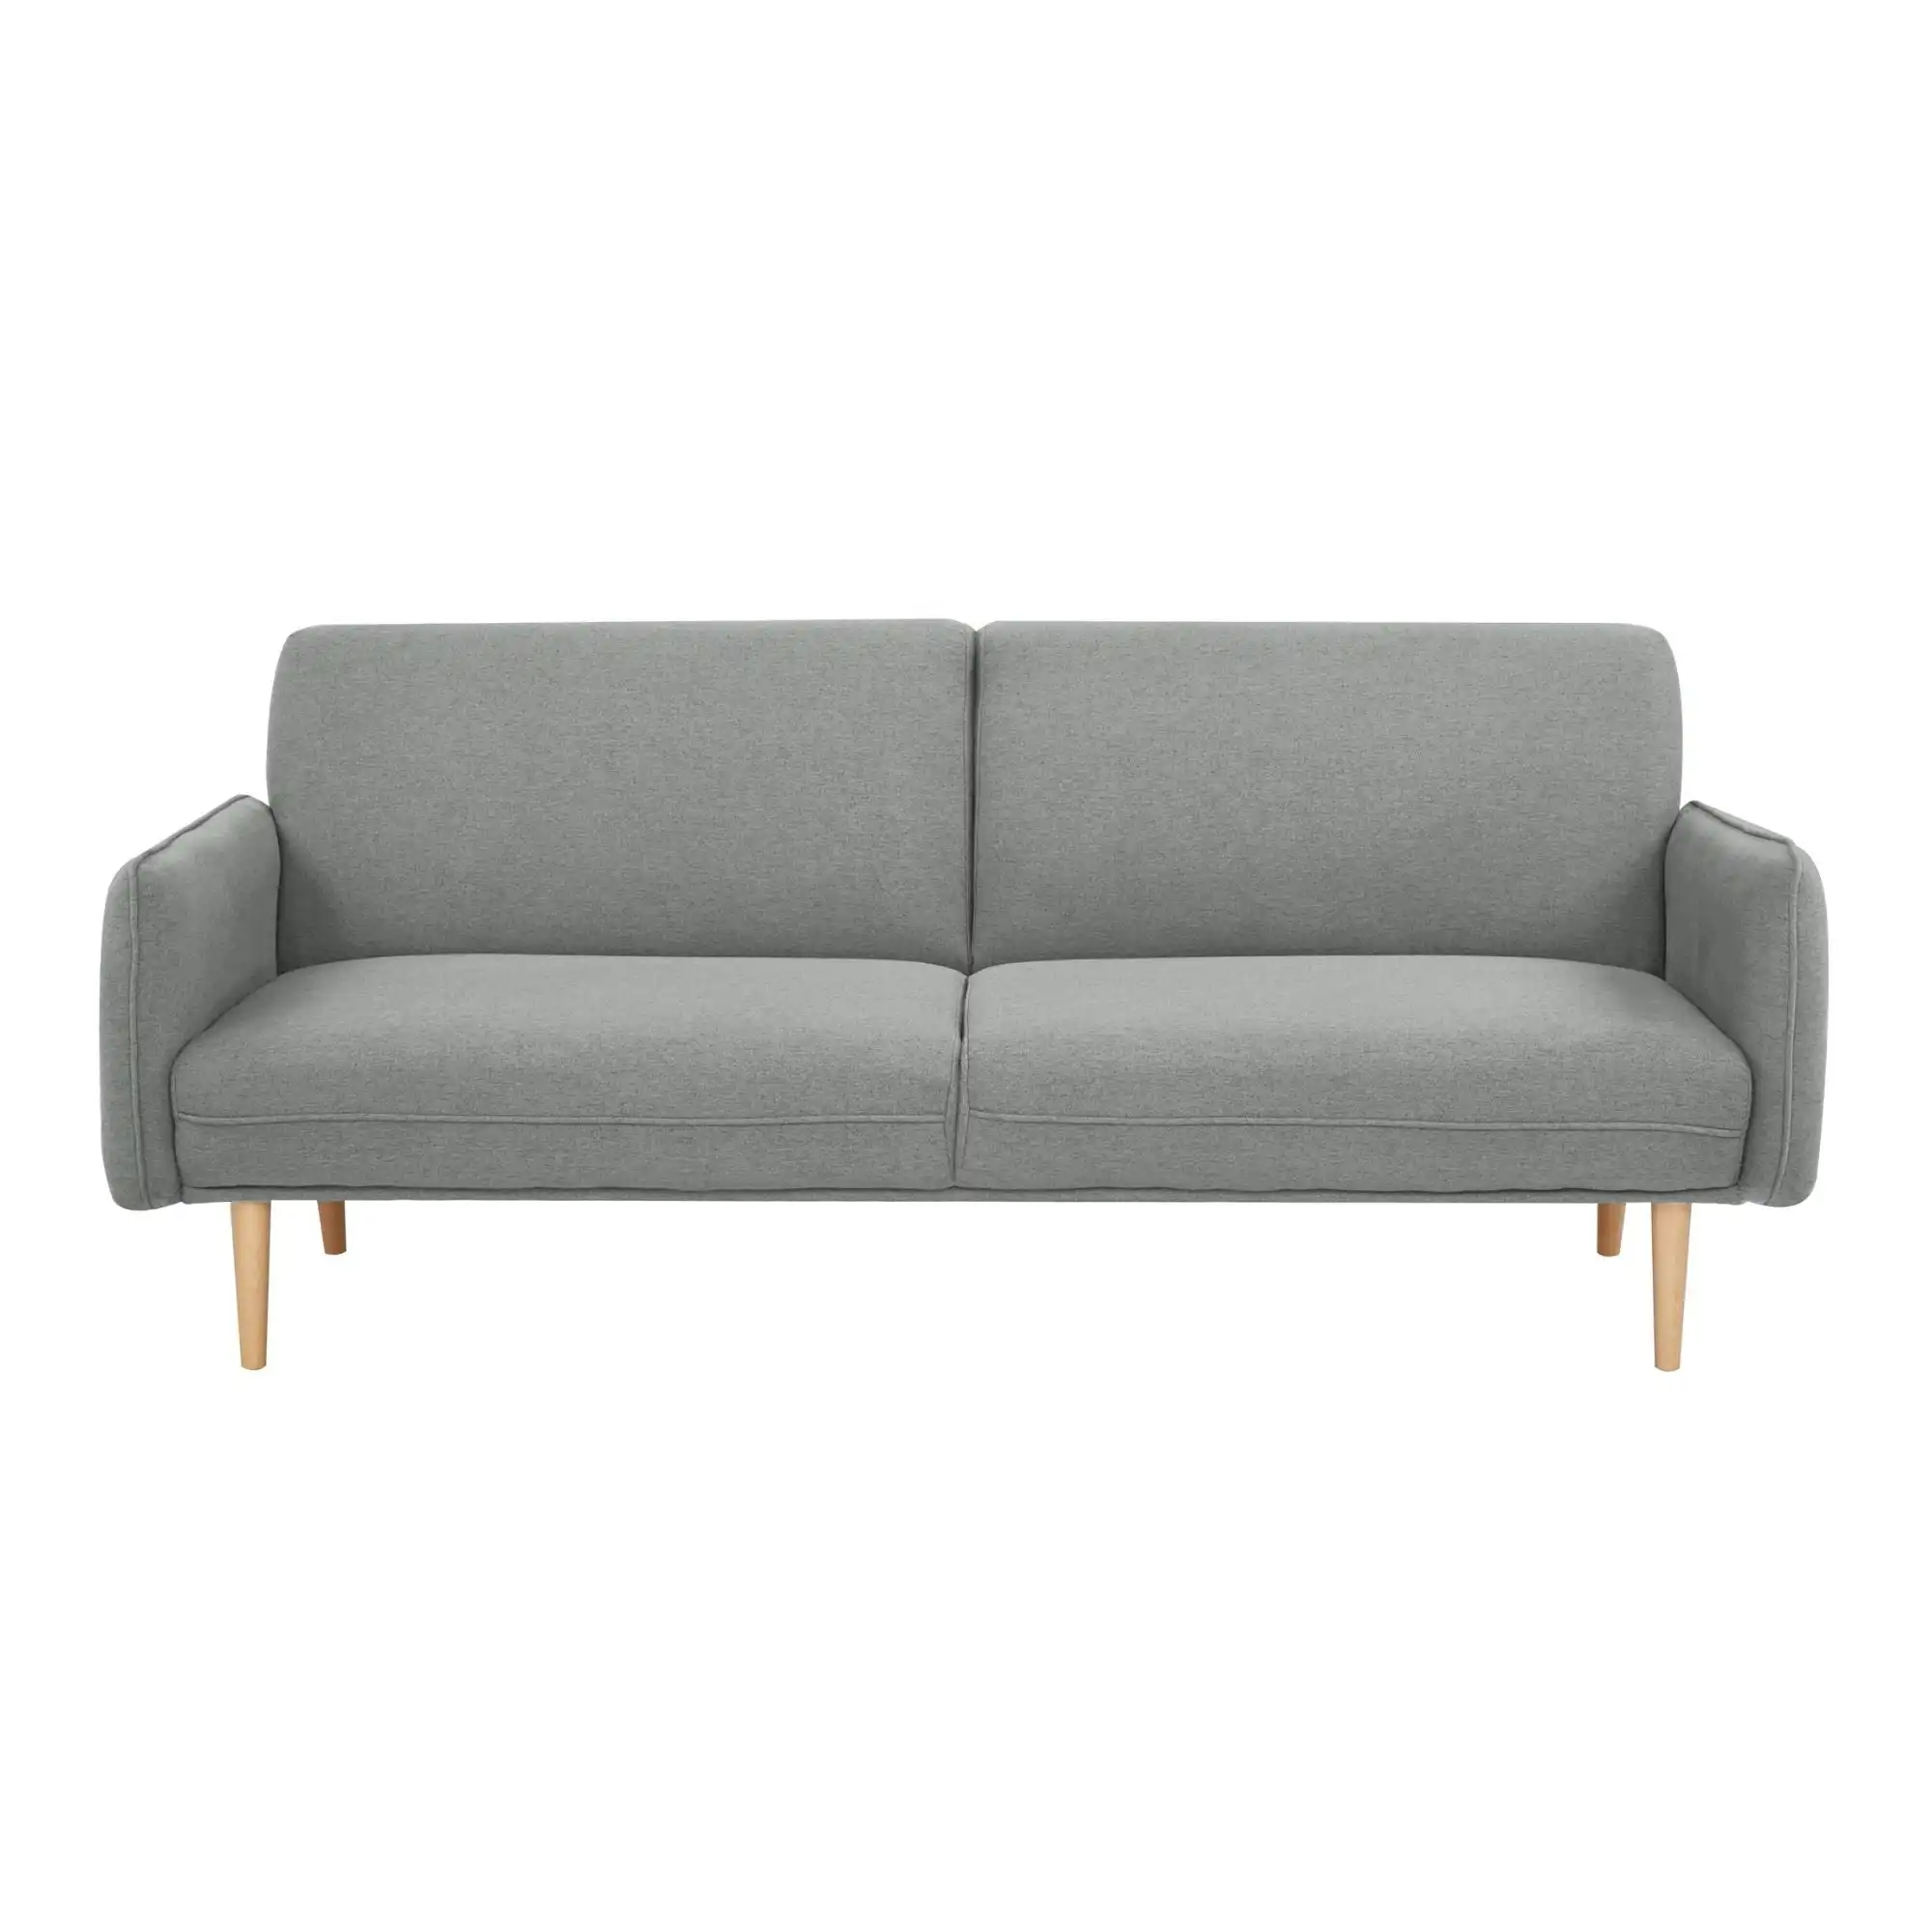 Celia 3 Seater Fabric Sofa Bed